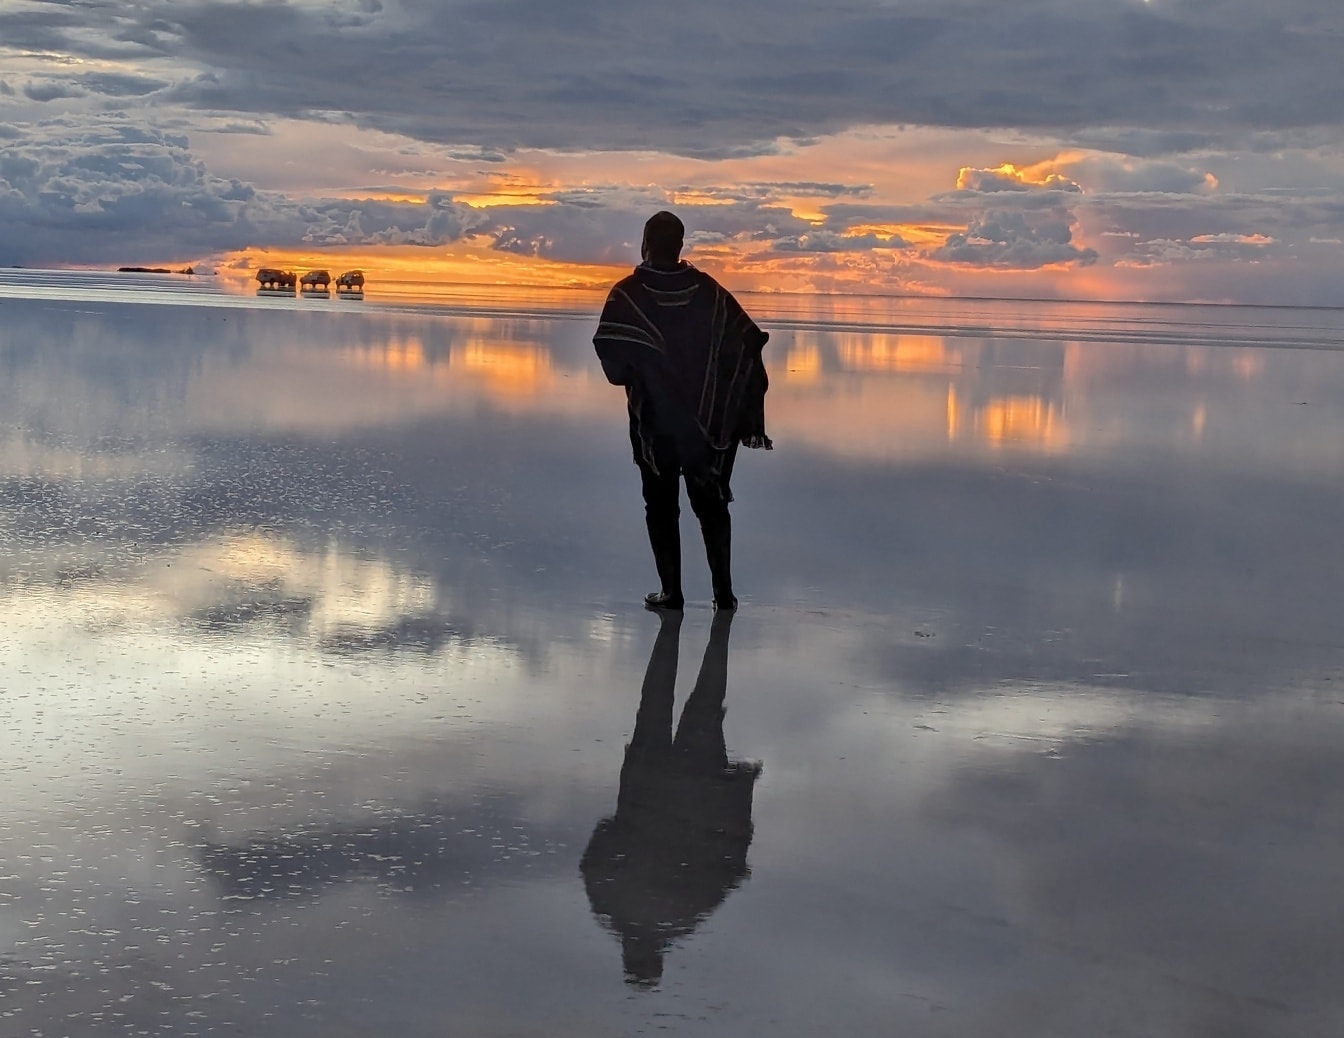 Mann steht auf einem Wasser mit schönem Sonnenuntergang im Hintergrund, der sich auf einer Wasseroberfläche spiegelt